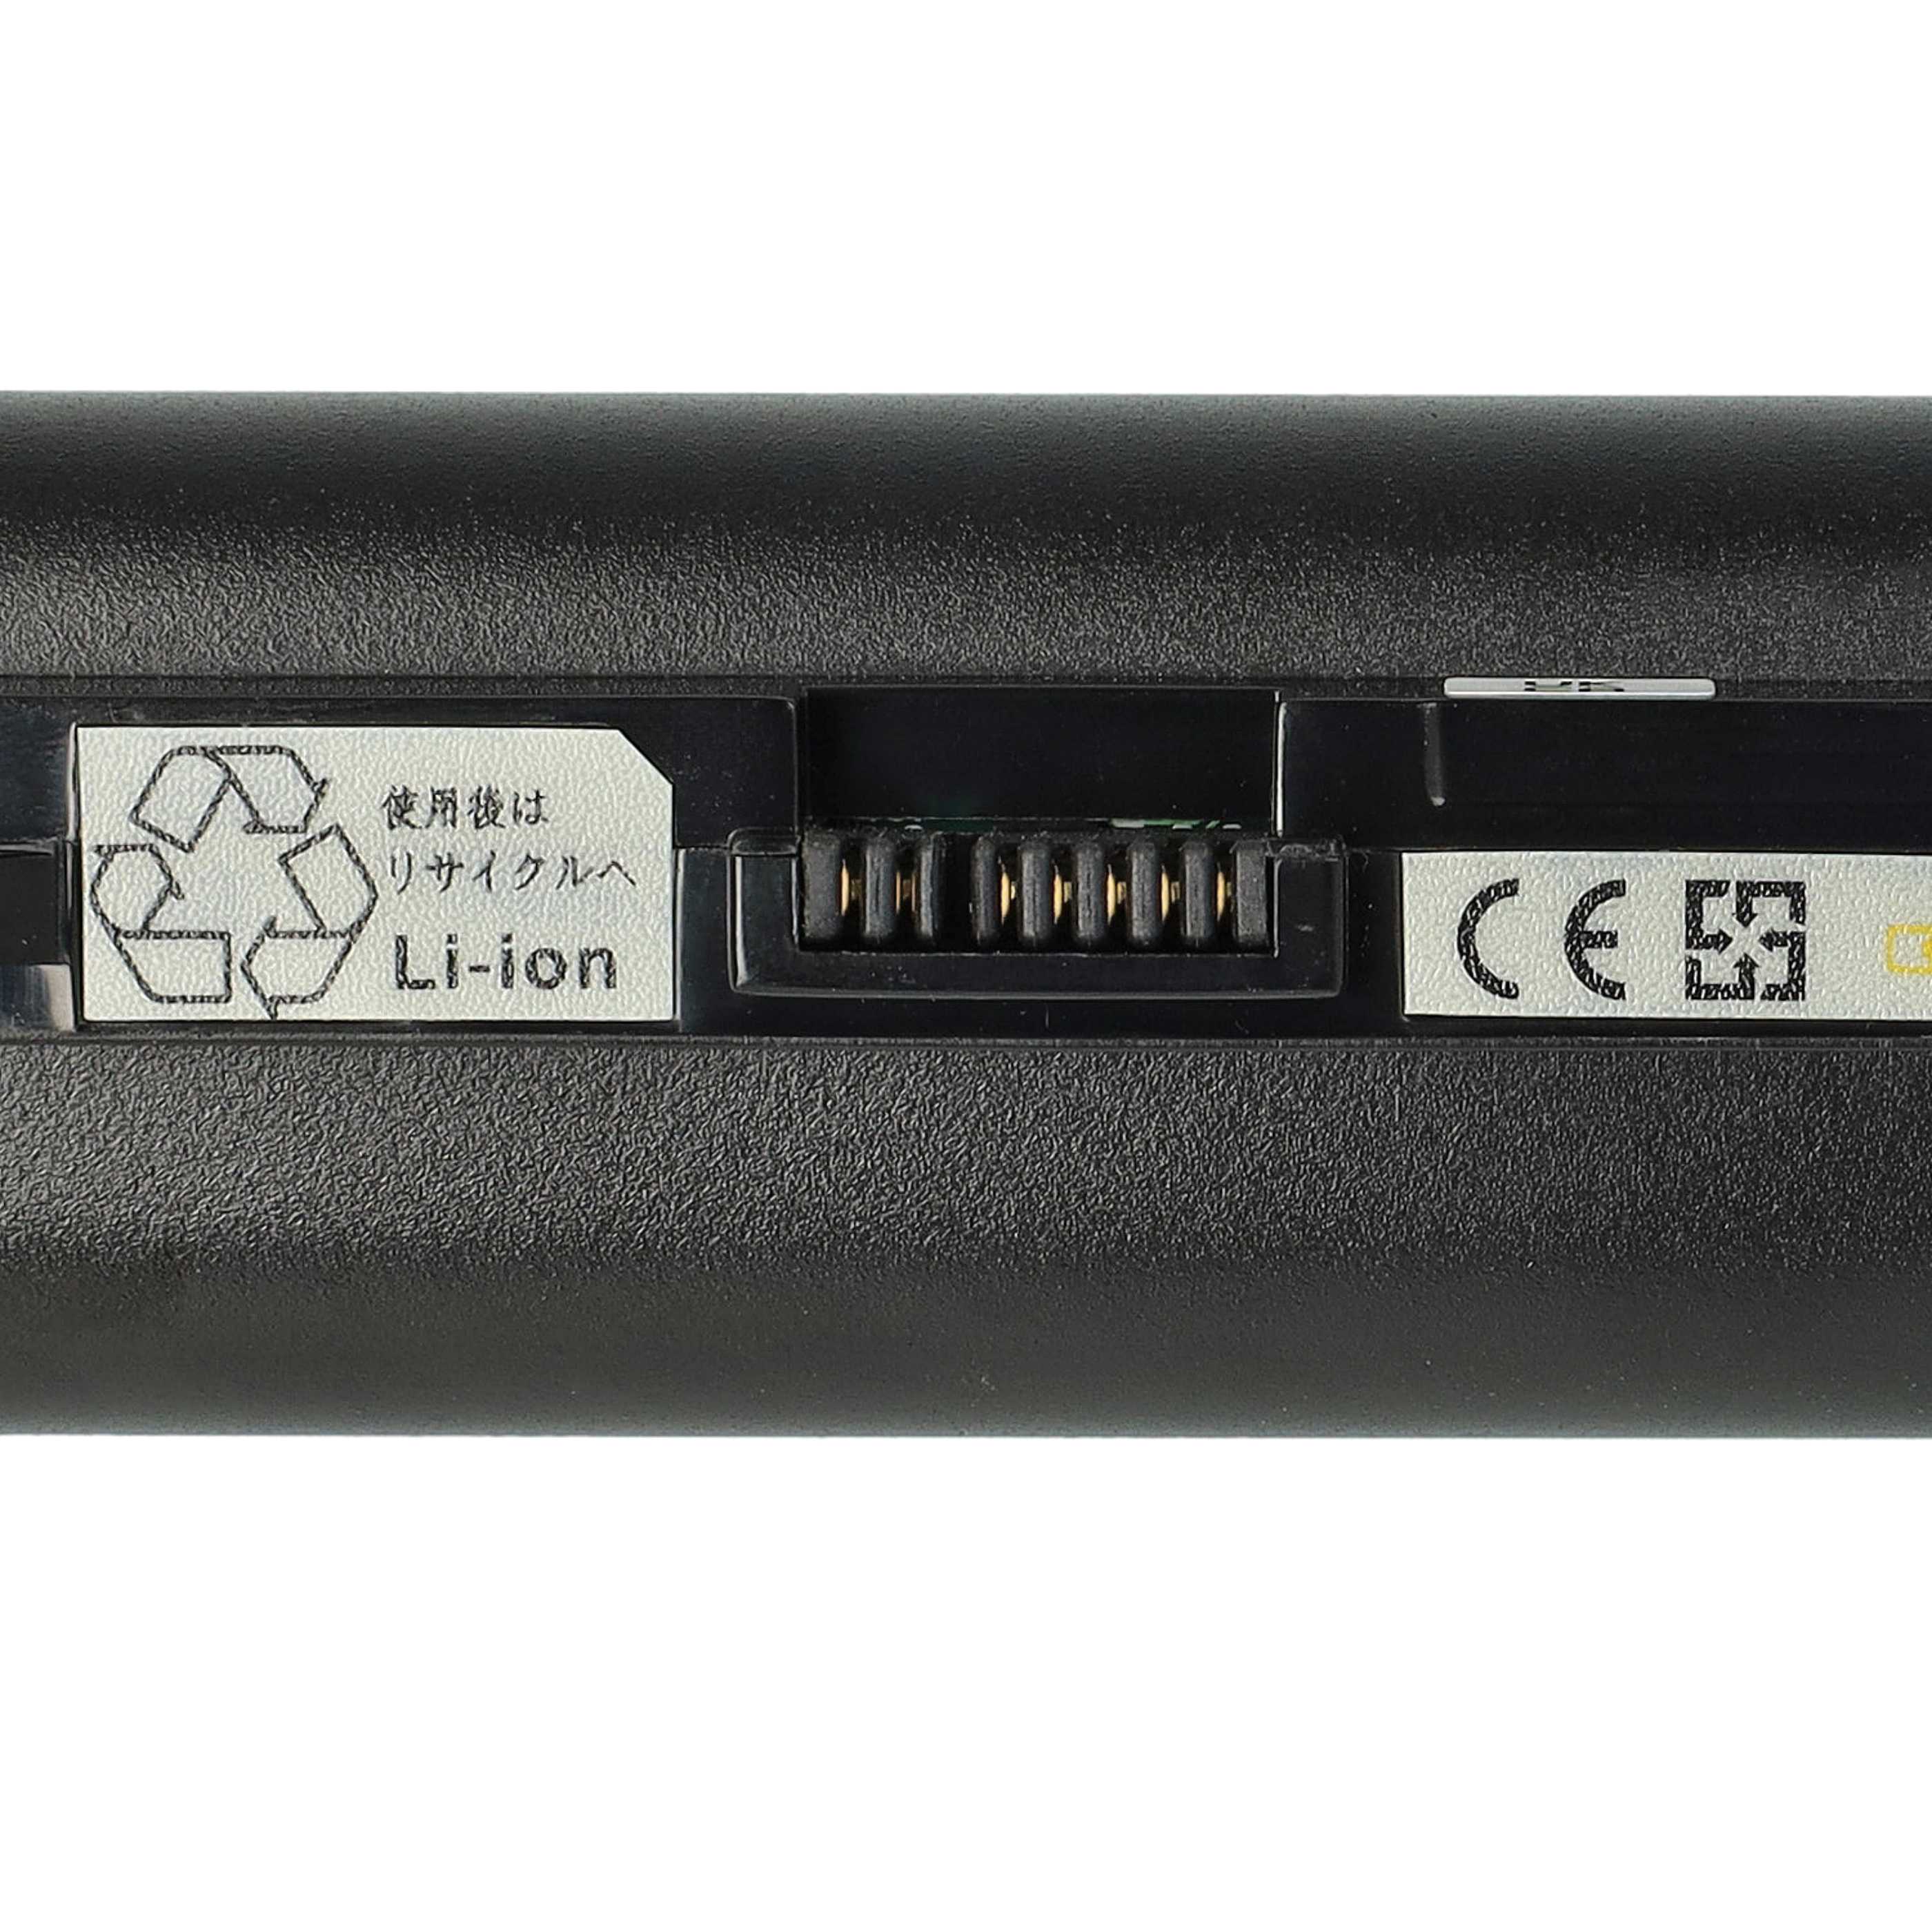 Batterie remplace Lenovo 55Y9382, 55Y9383, 57Y6273 pour ordinateur portable - 6600mAh 11,1V Li-ion, noir